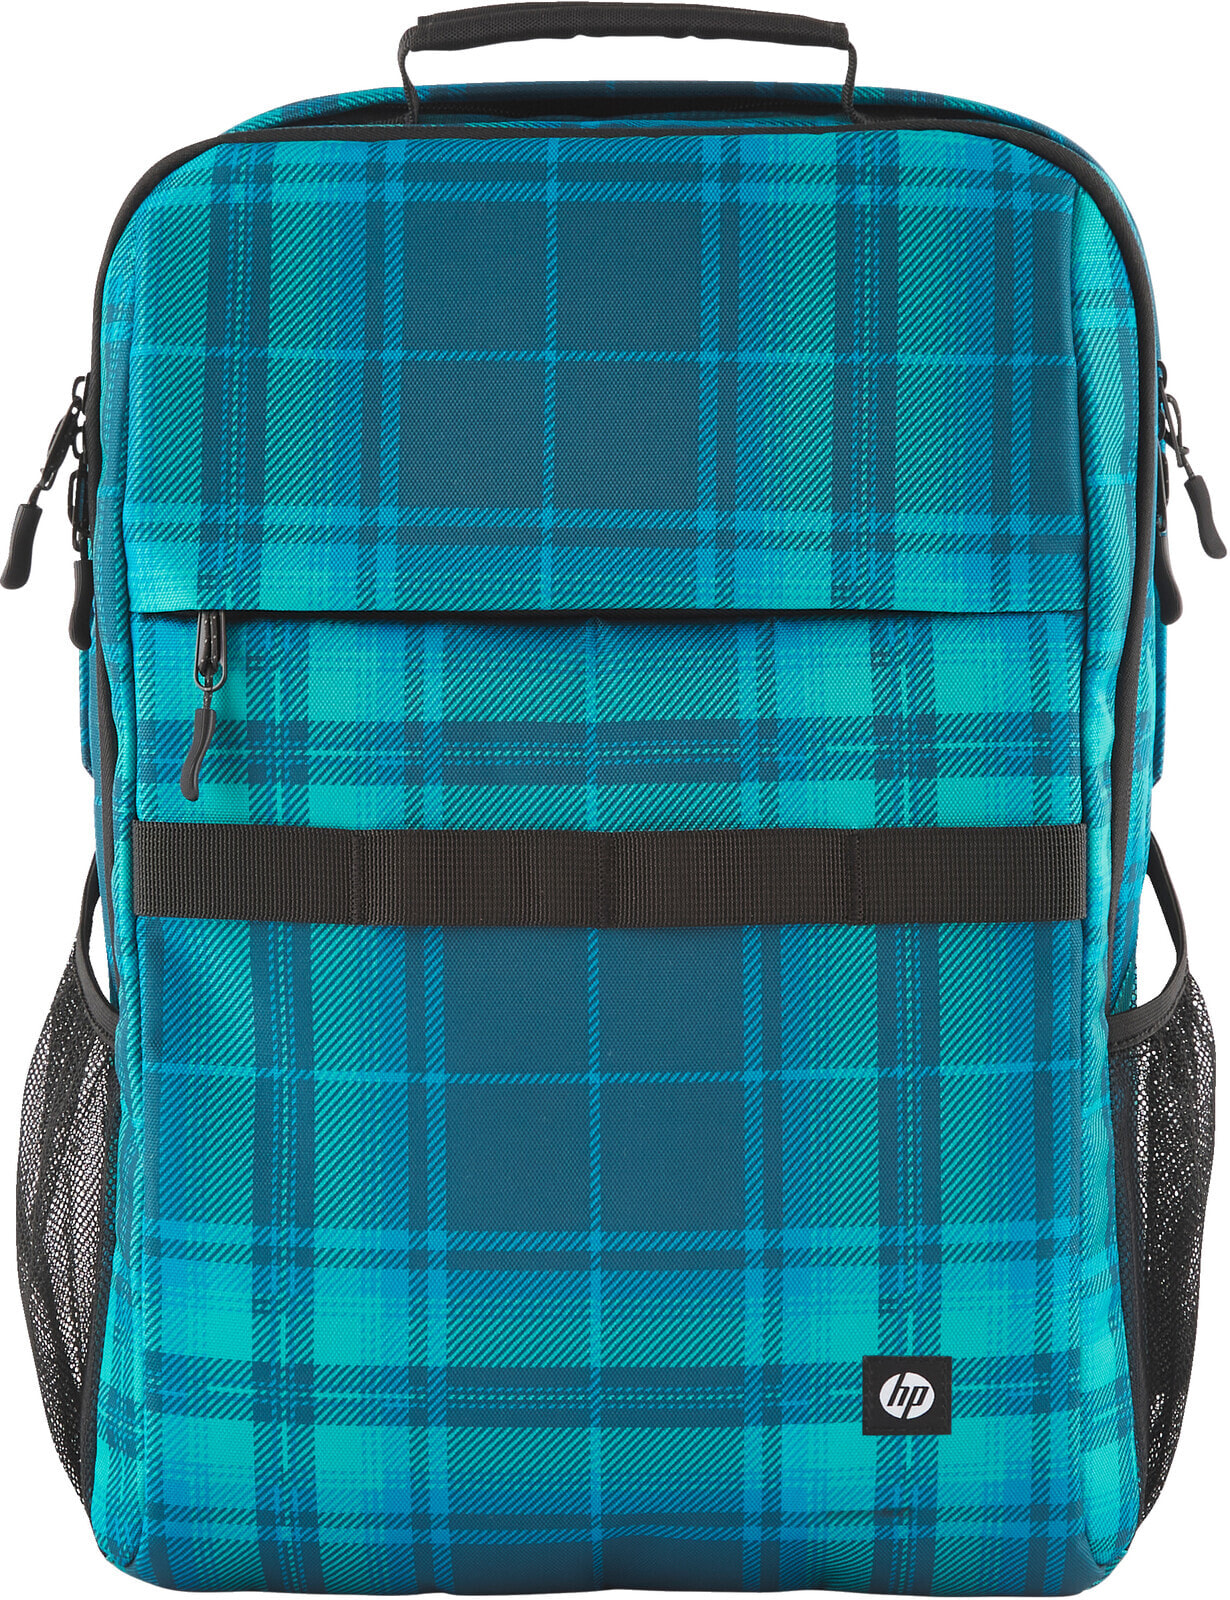 HP Campus XL Tartan Plaid Backpack - 40.9 cm (16.1